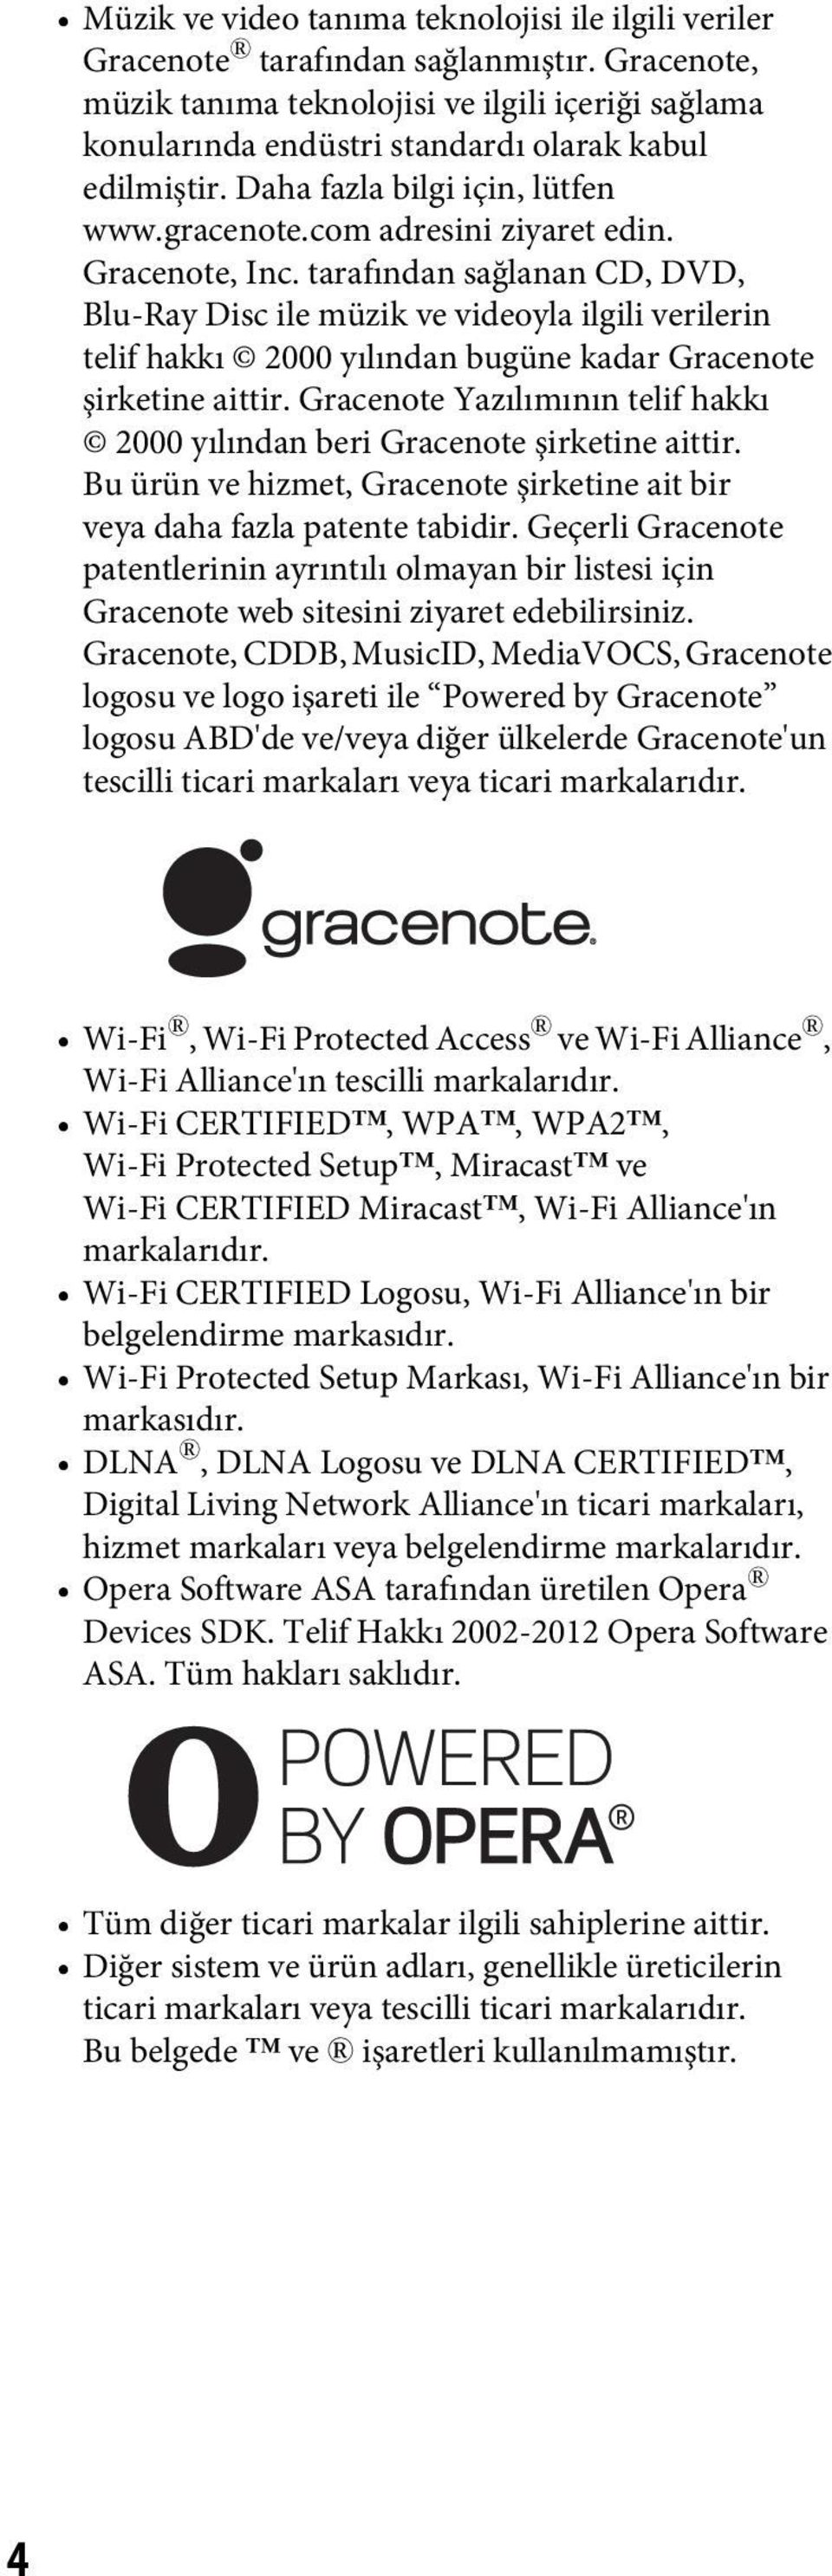 Gracenote, Inc. tarafından sağlanan CD, DVD, Blu-Ray Disc ile müzik ve videoyla ilgili verilerin telif hakkı 2000 yılından bugüne kadar Gracenote şirketine aittir.